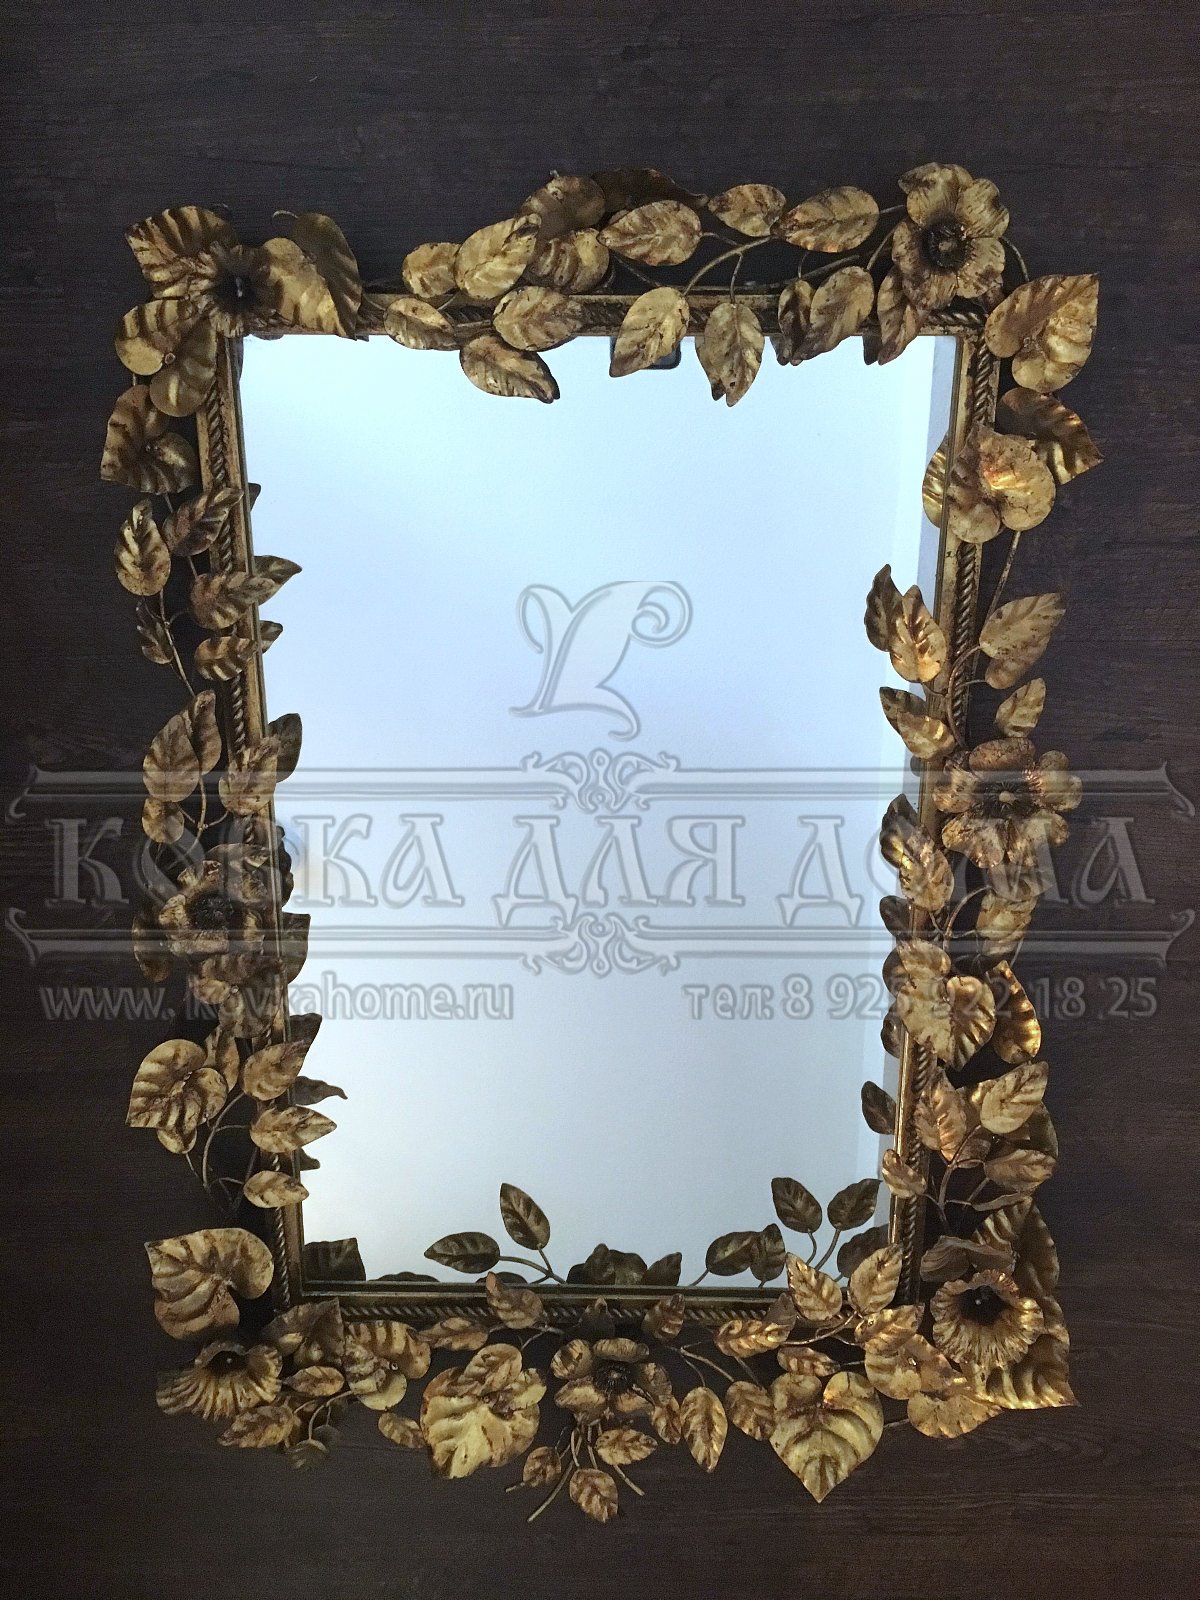 Зеркало в классическом стиле в декоративной стальной оригинальной раме с золотыми цветками, настенное ручной работы. Размер габаритный 600х400мм